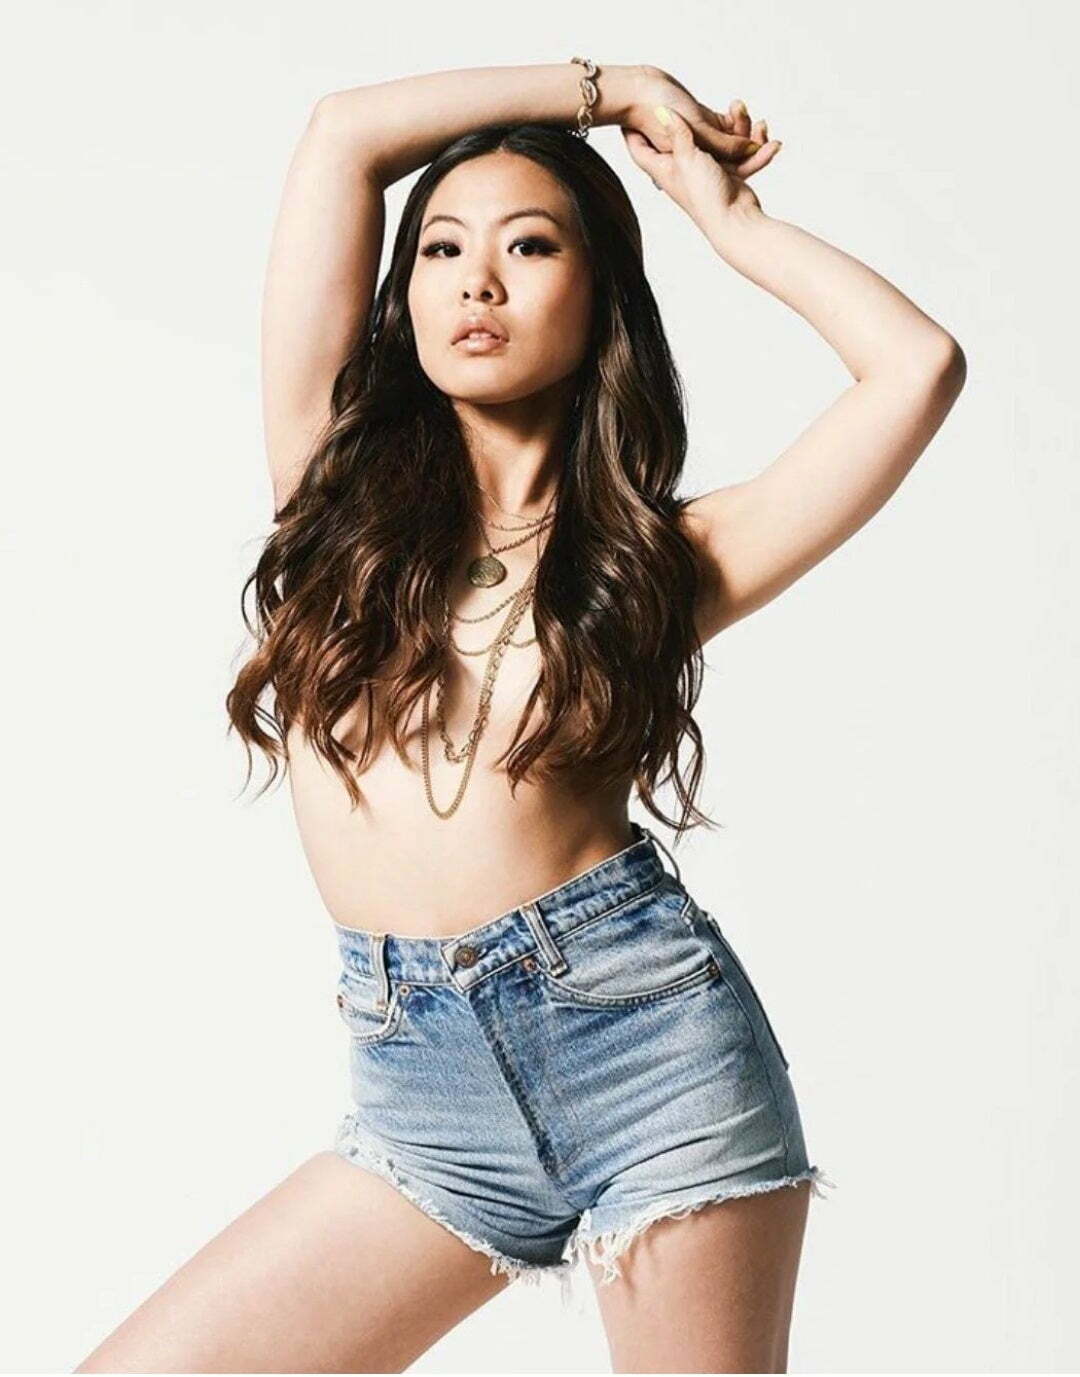 Nicole Kang